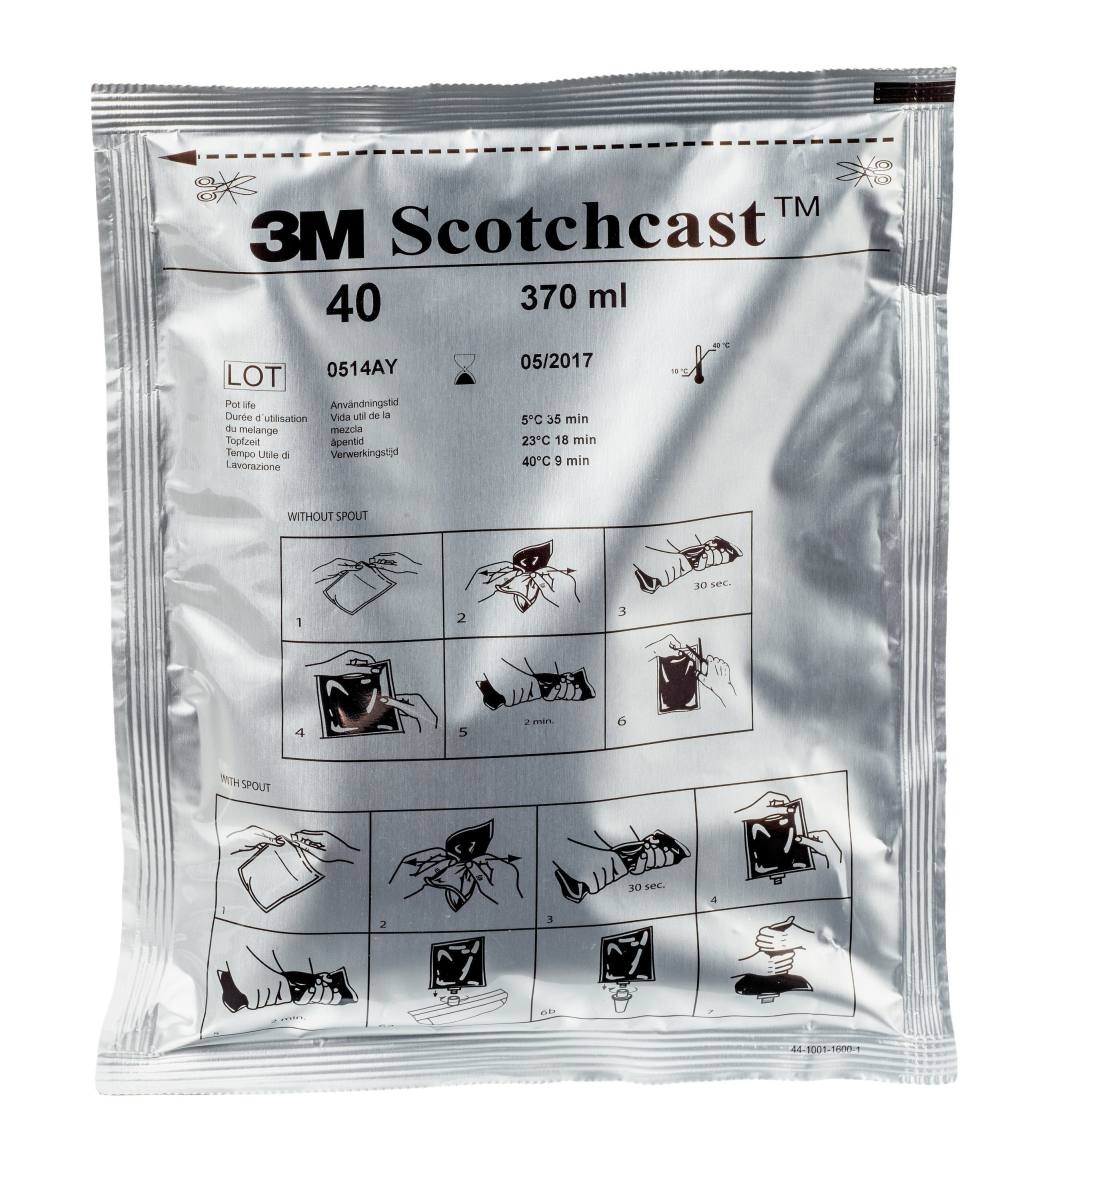  3M Scotchcast 40-C-B, polyuretaanikaapelihartsi, 2-komponenttinen GMG-järjestelmä, koko C, 370 ml, irtopakkaus